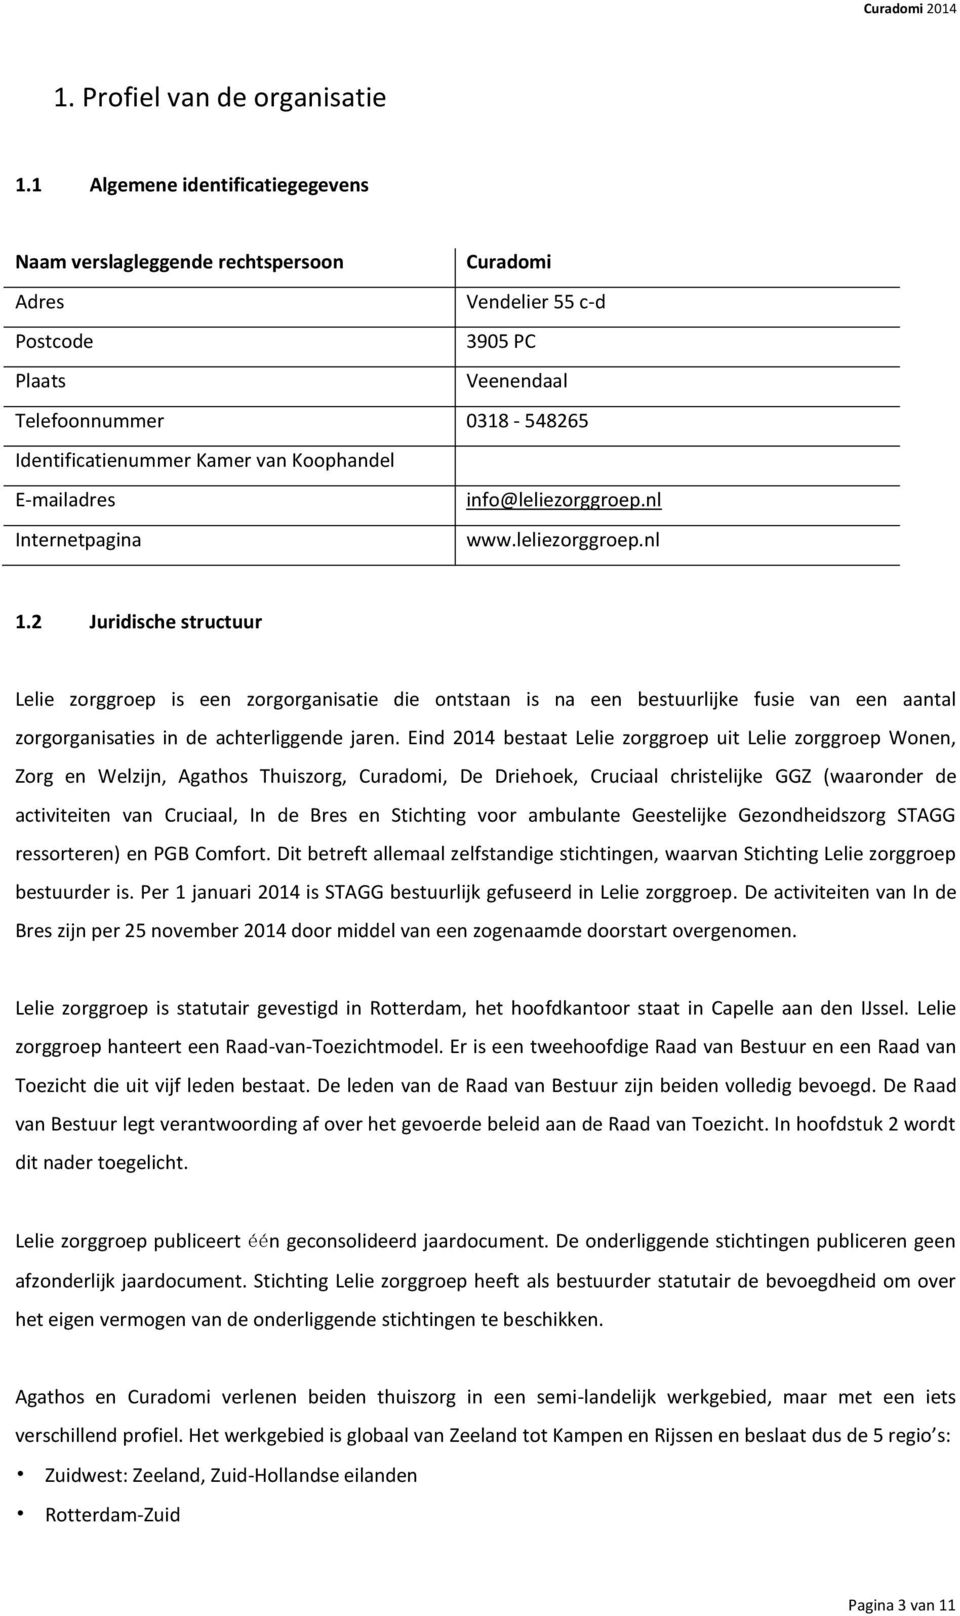 Koophandel E-mailadres info@leliezorggroep.nl Internetpagina www.leliezorggroep.nl 1.